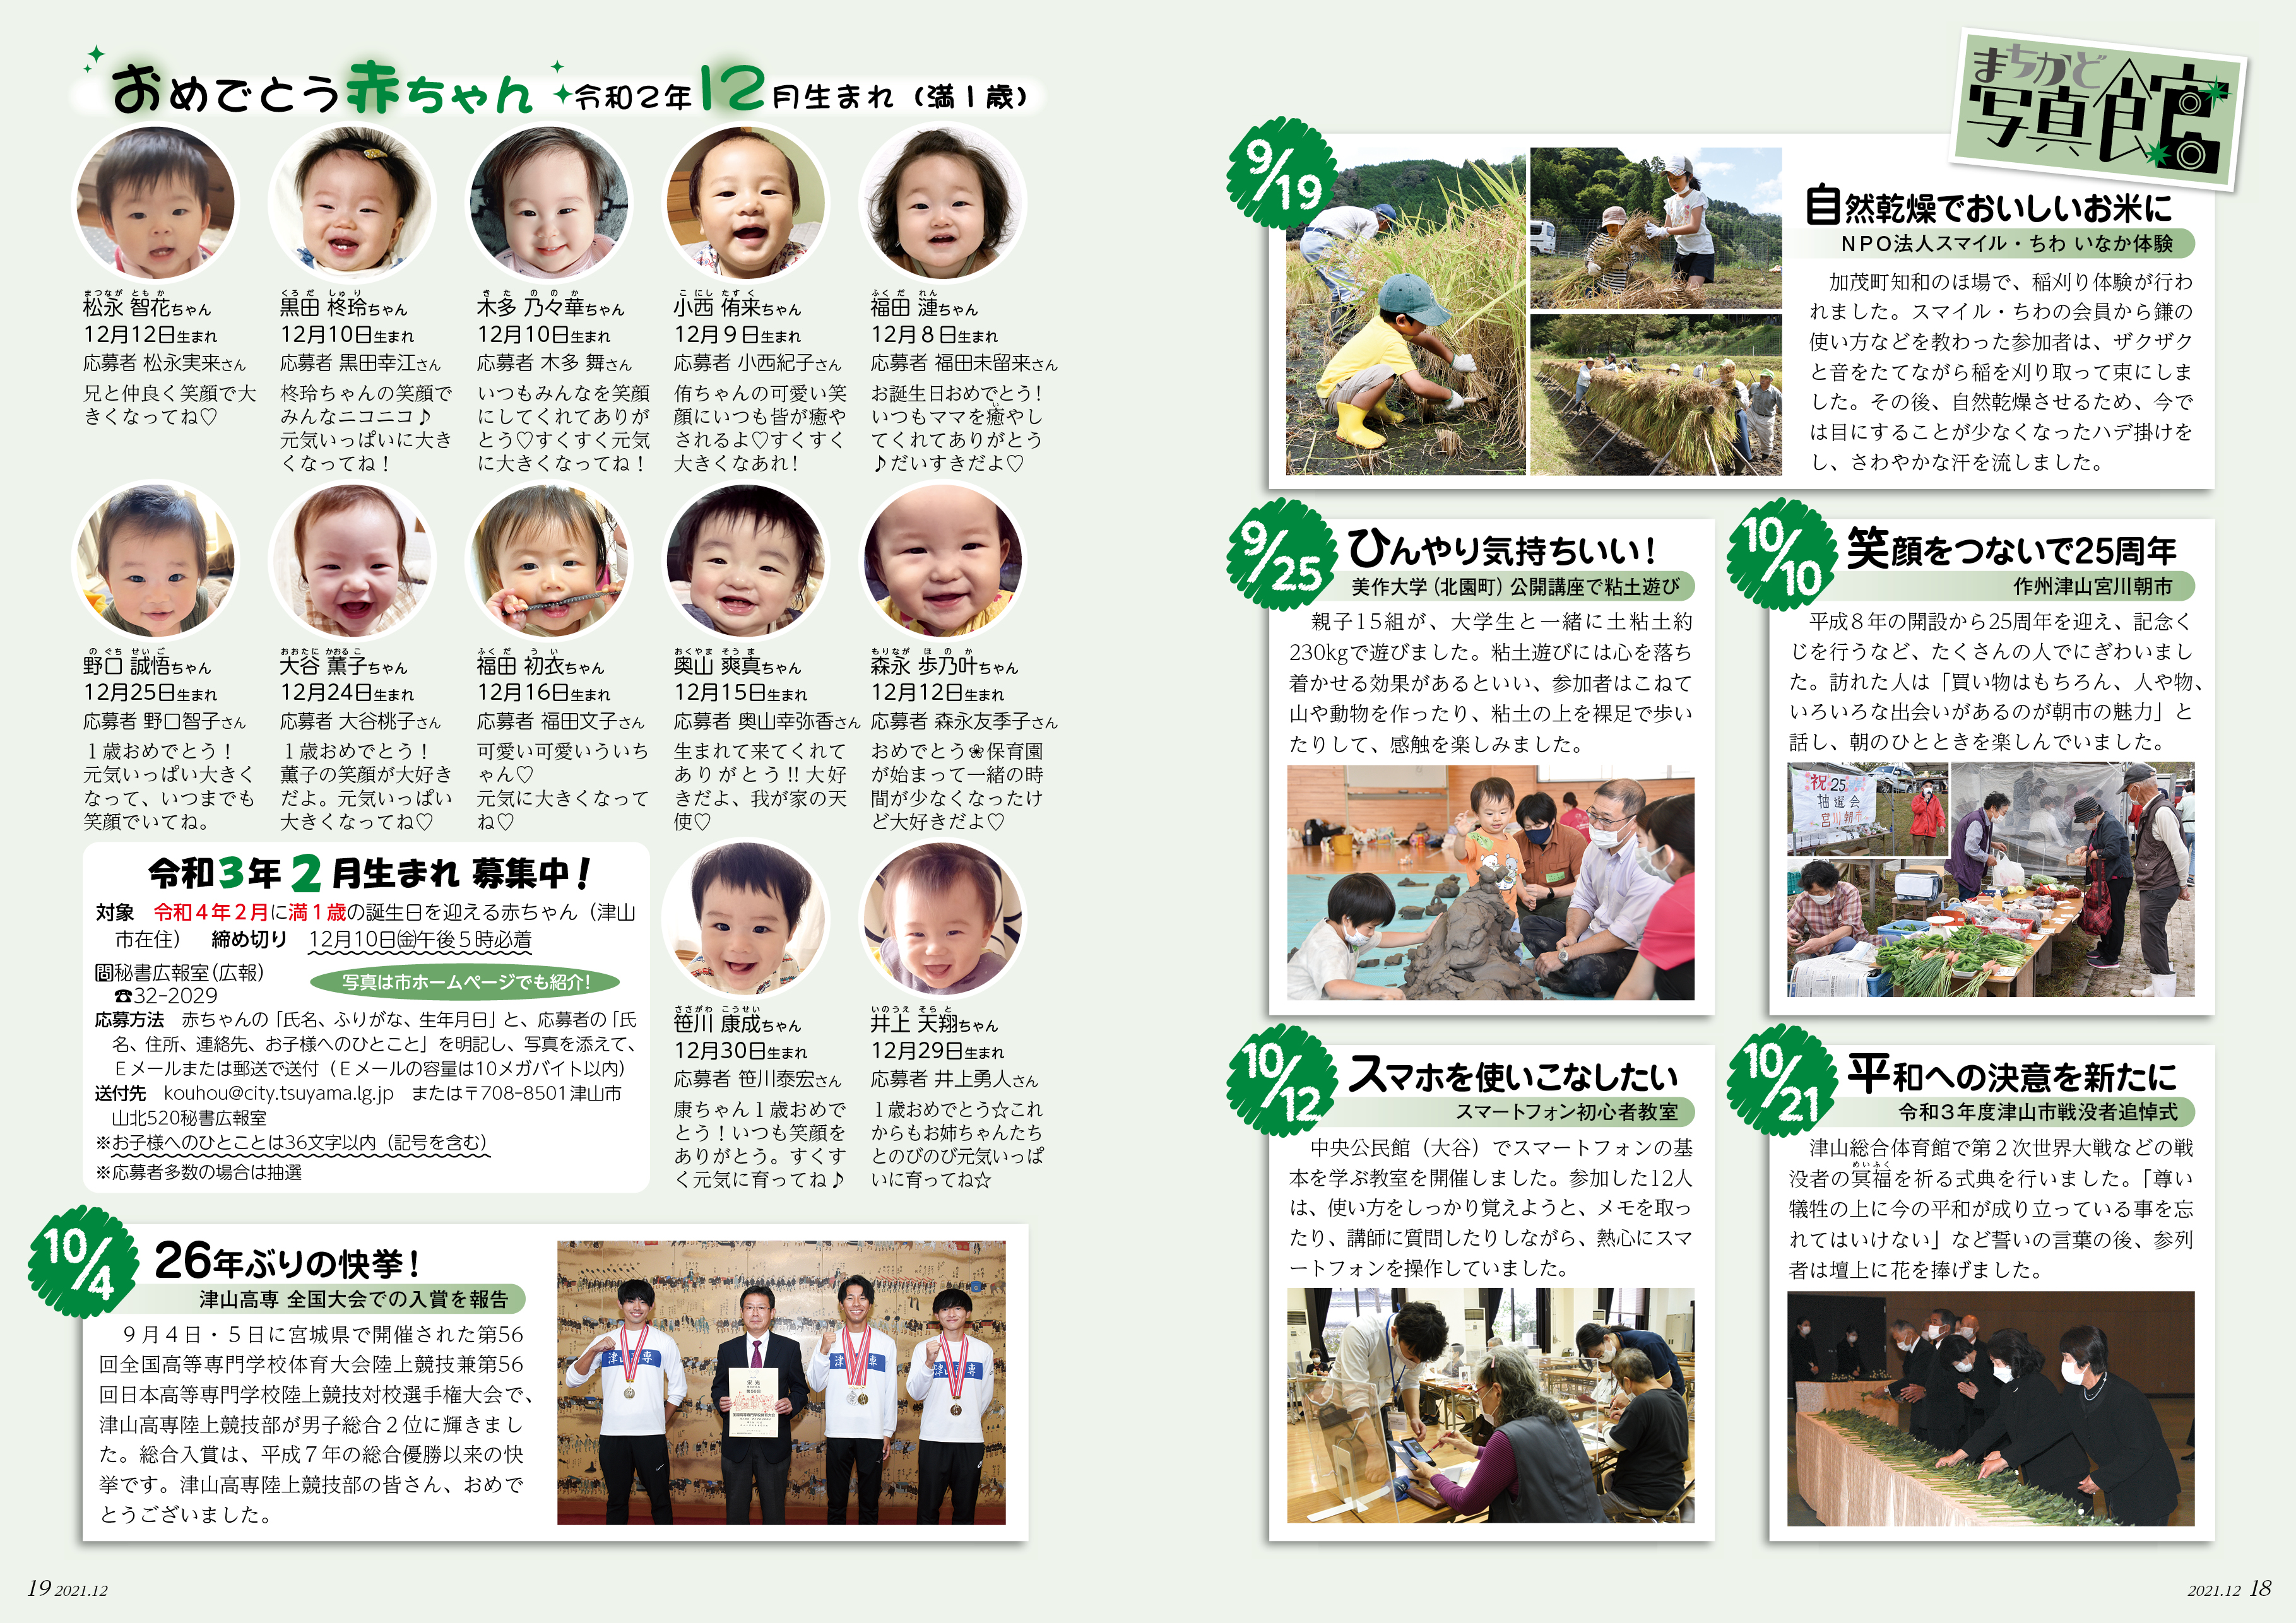 広報津山 おめでとう赤ちゃん 令和2年12月生まれ 満1歳 の赤ちゃんを紹介します 津山市公式サイト